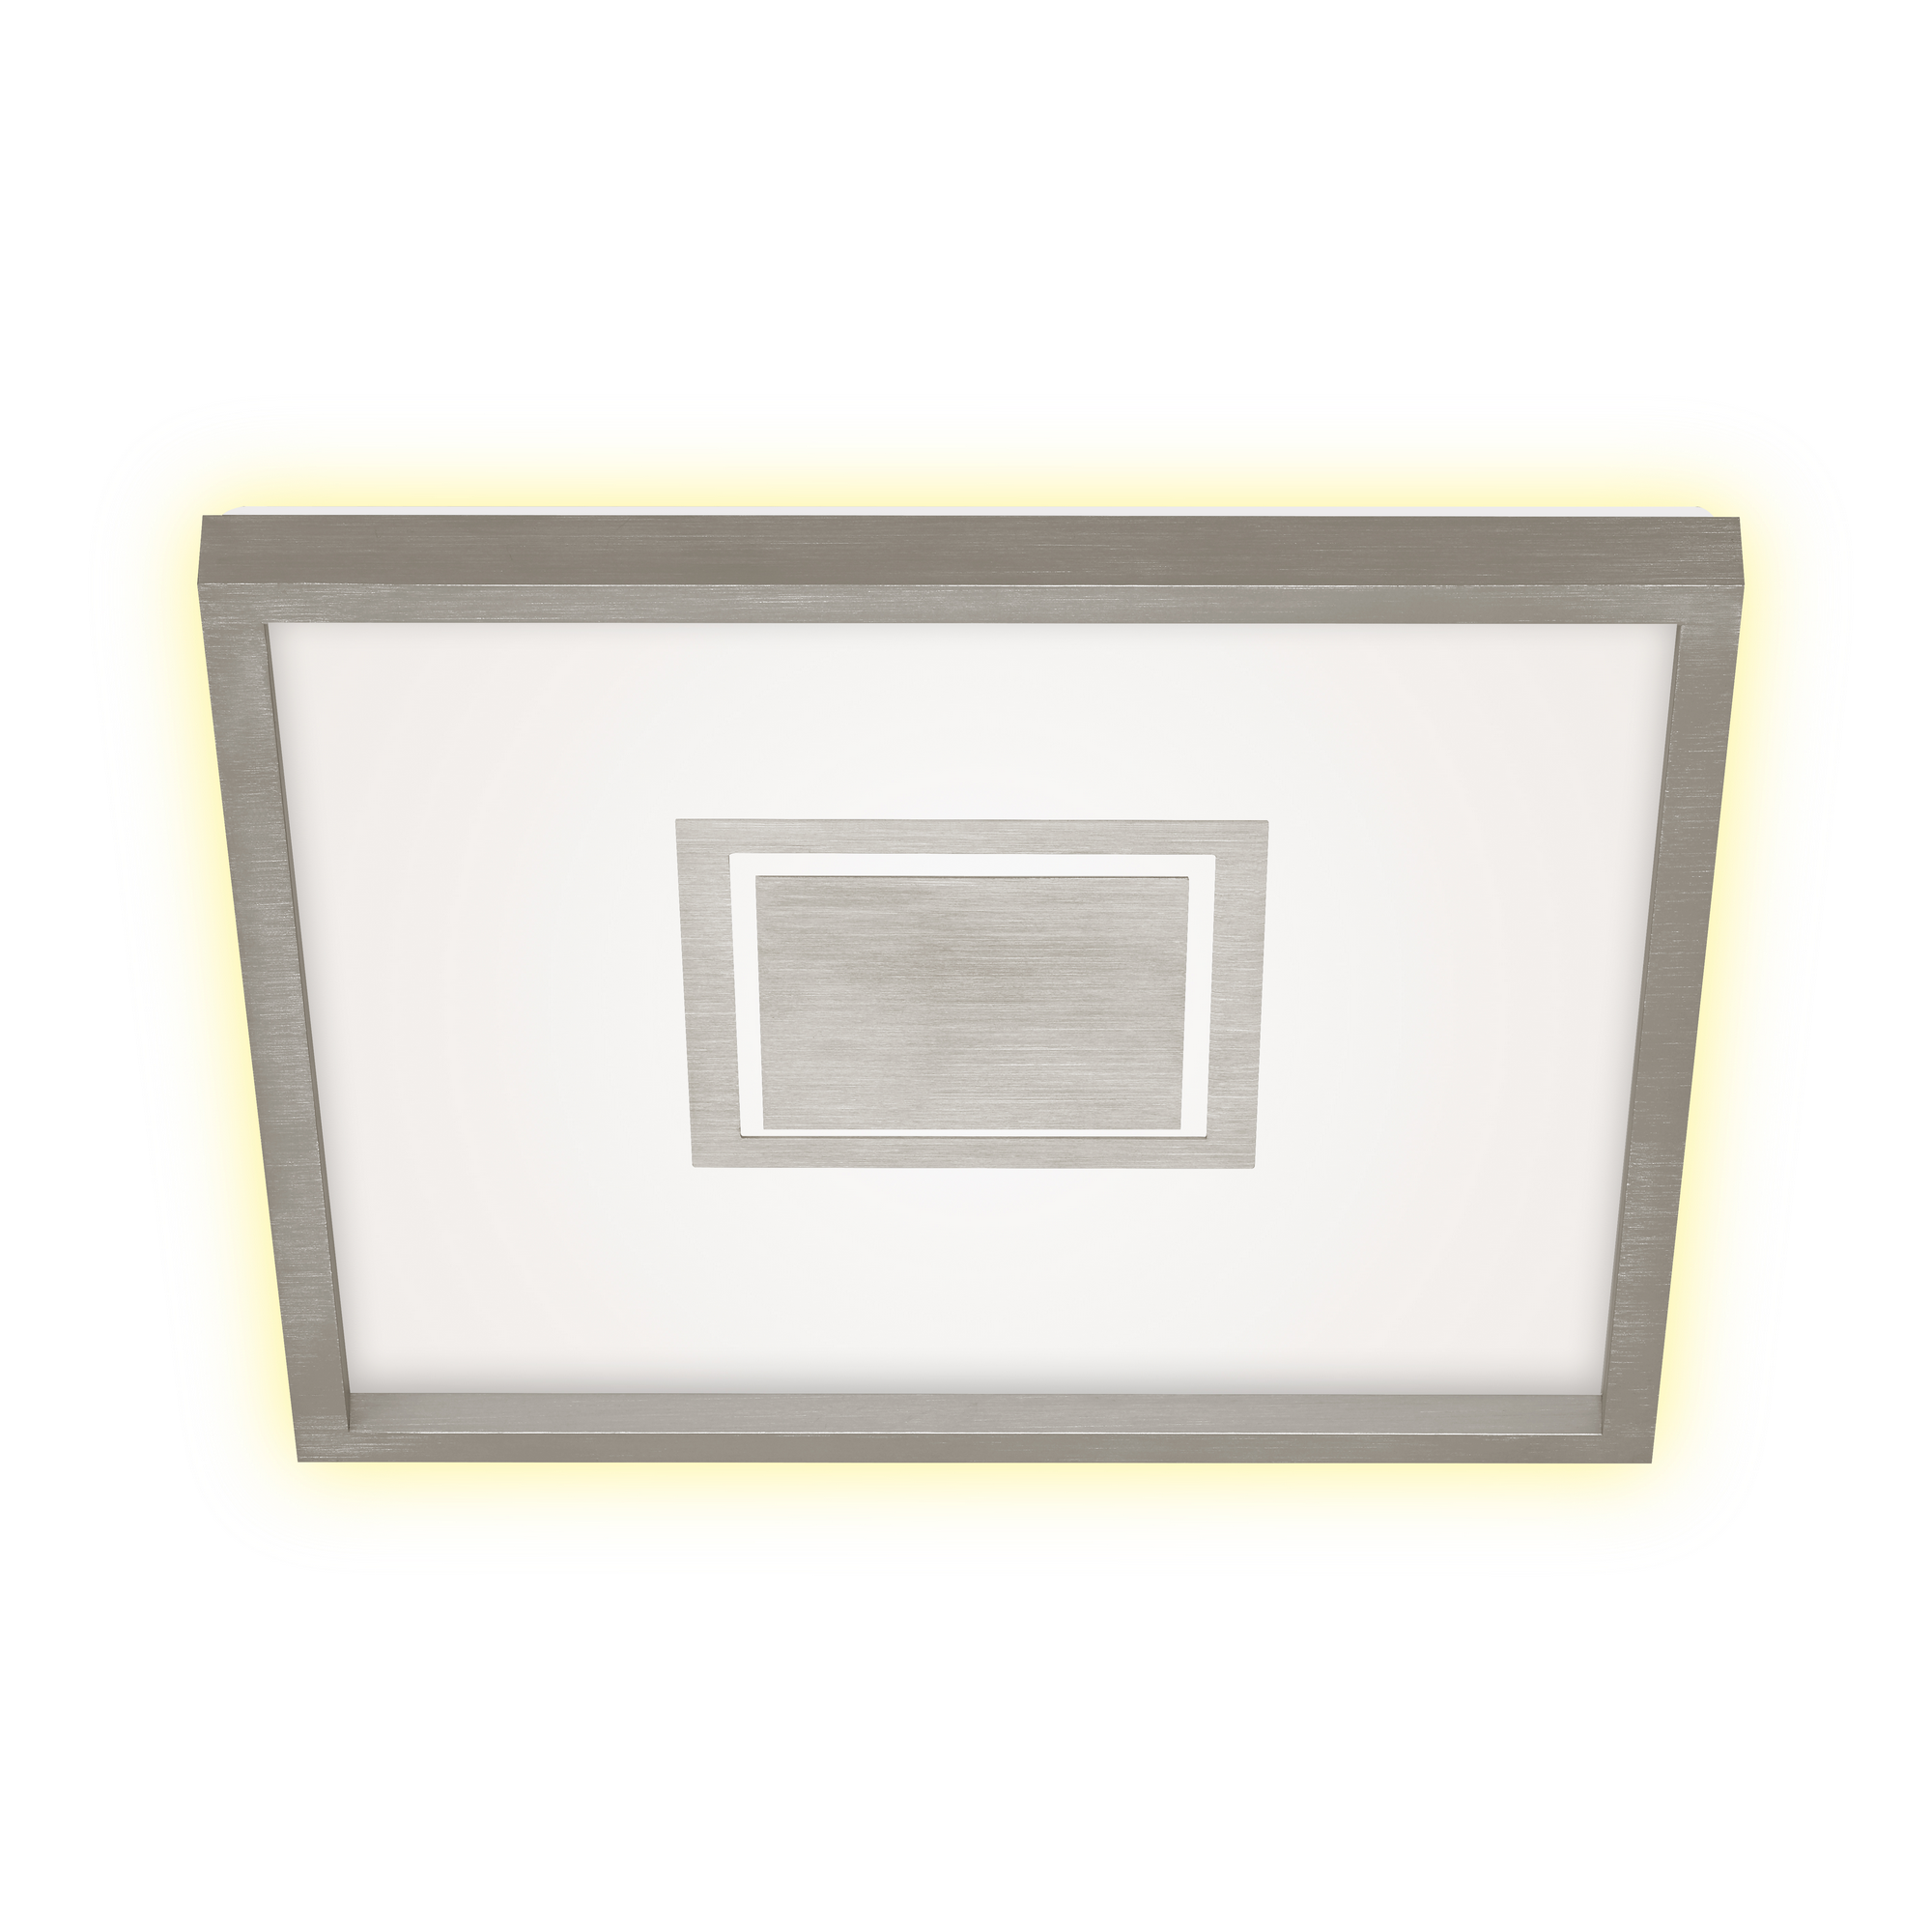 LED-Deckenleuchte 'Geo' nickelfarben matt 42,3 x 42,3 cm 3000 lm + product picture